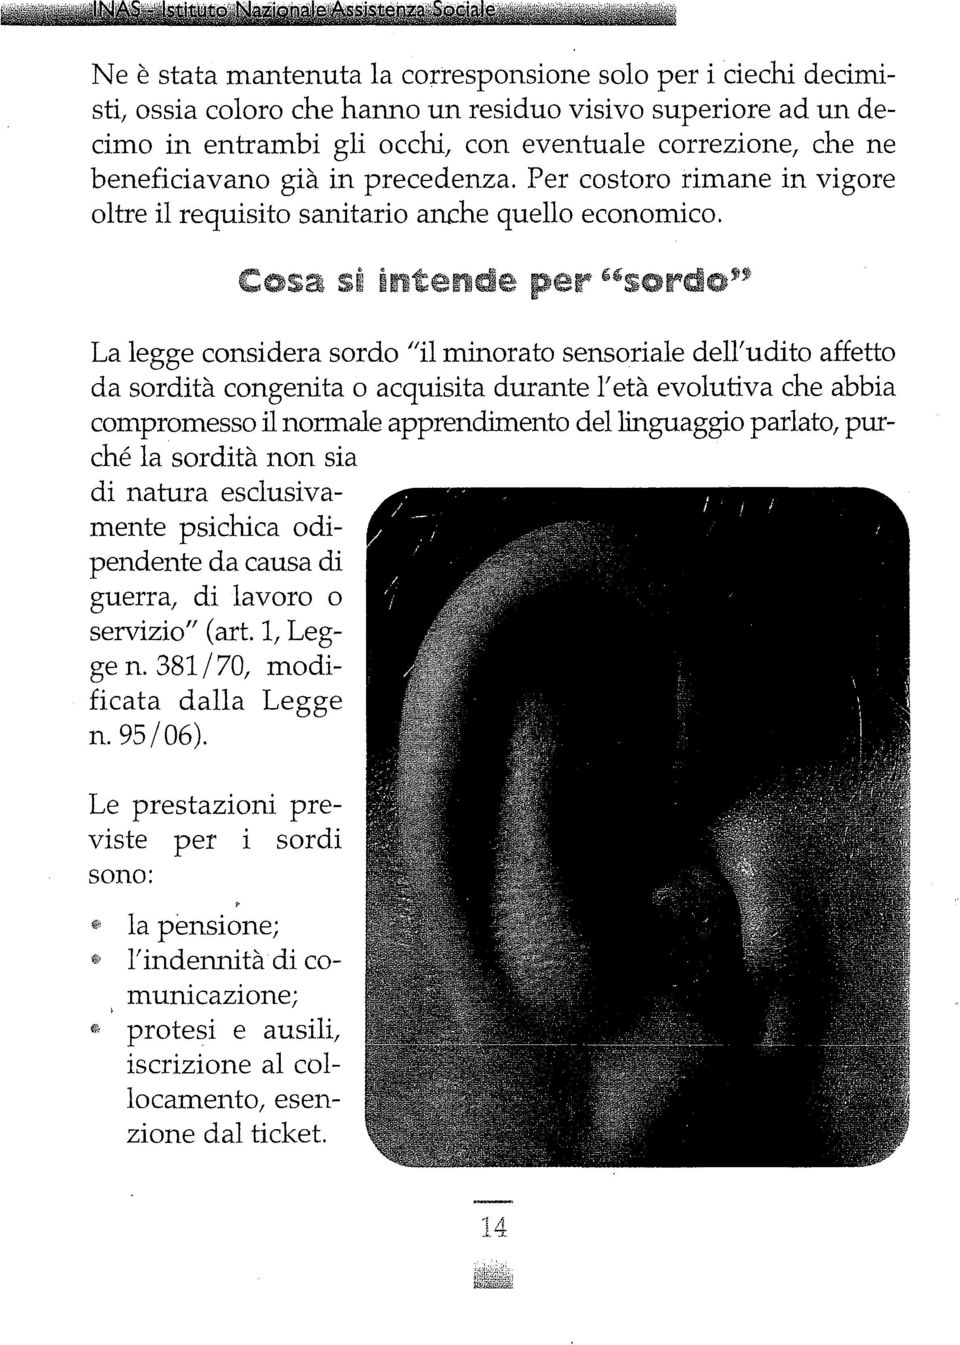 La legge considera sordo /lil minorato sensoriale dell'udito affetto da sordità congenita o acquisita durante 1'età evolutiva che abbia compromesso il normale apprendimento del linguaggio parlato,